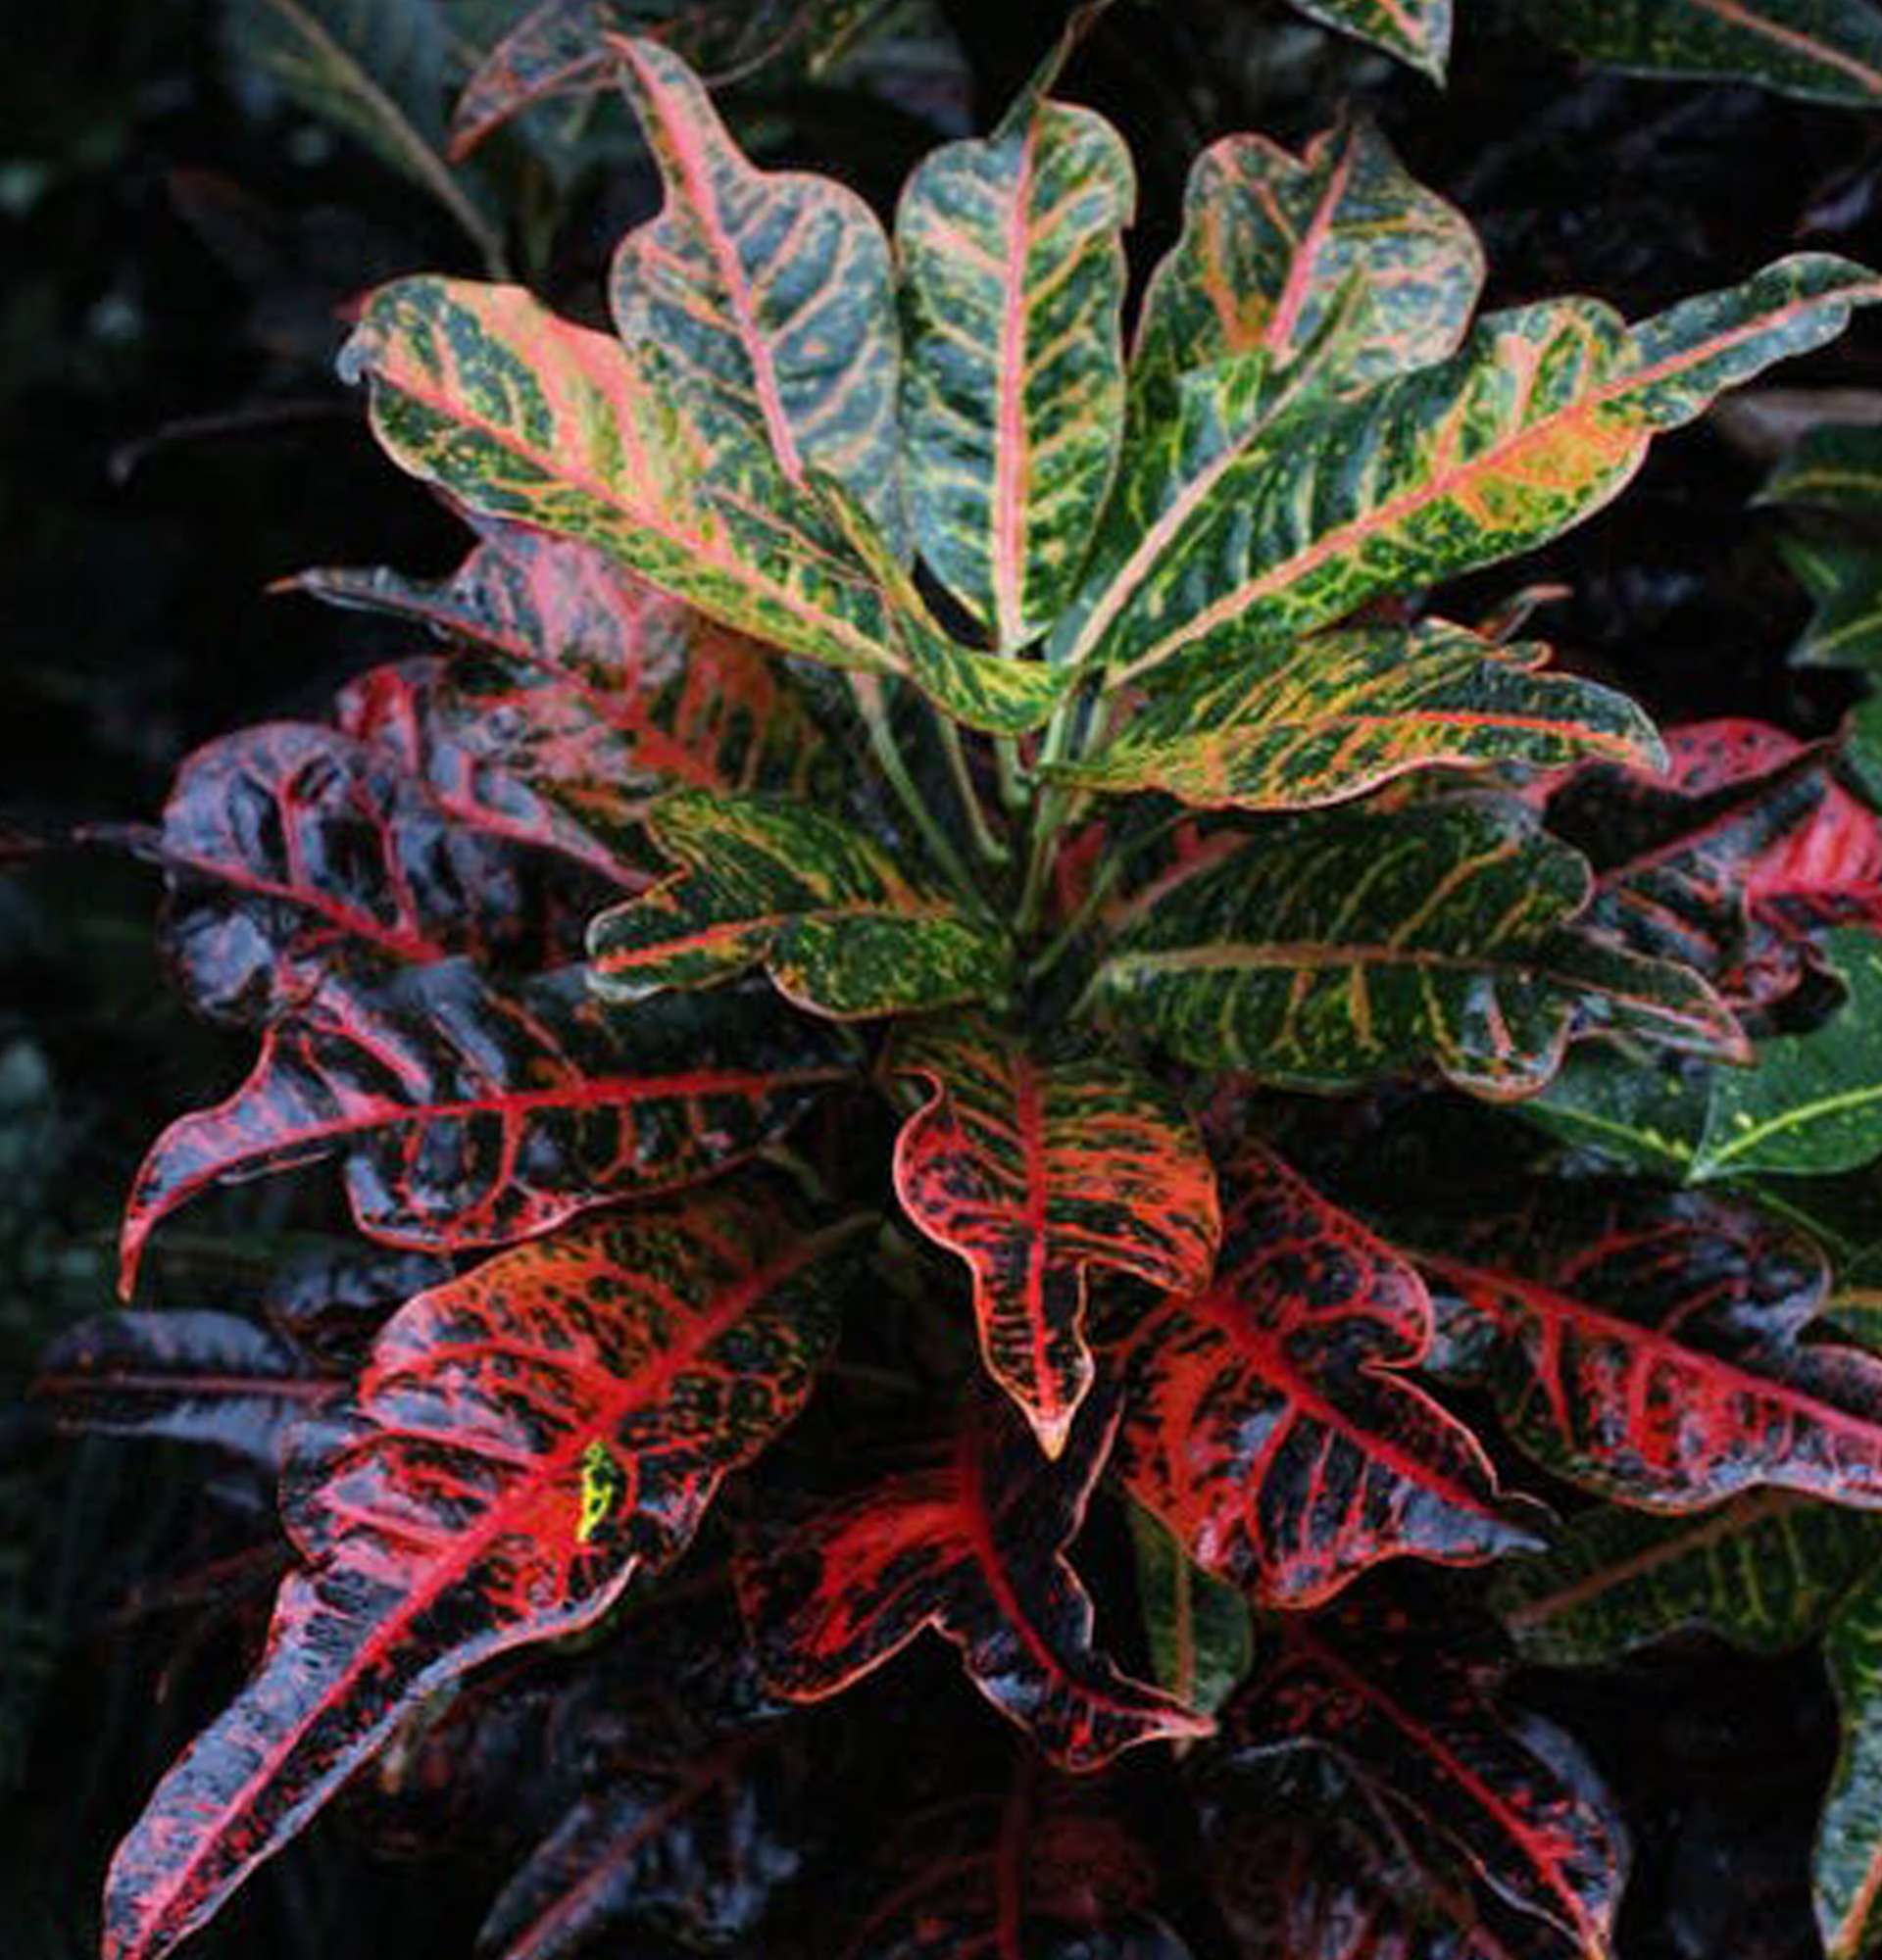  декоративно лиственные растения фото - кротон